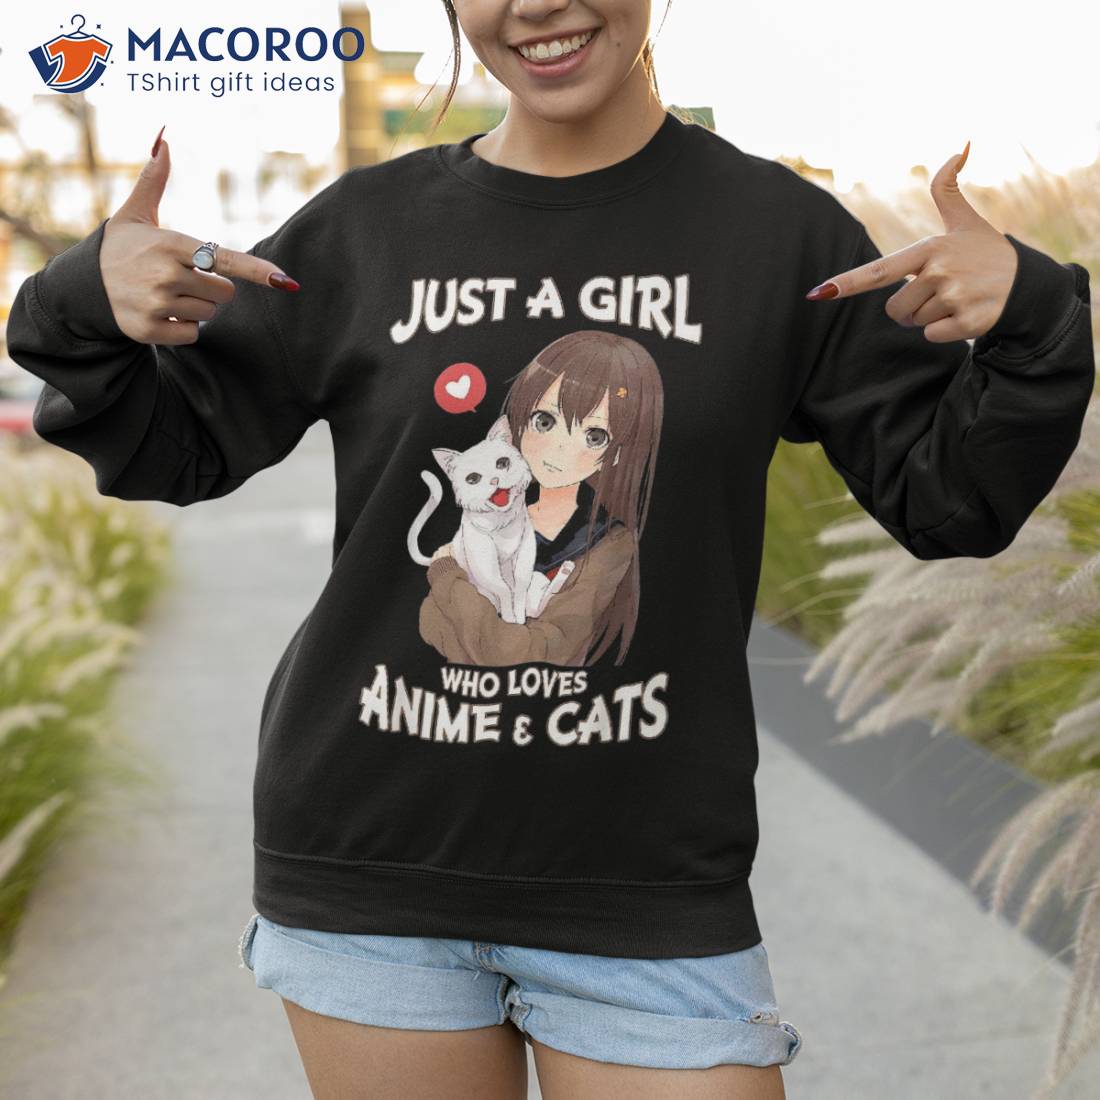 Anime Gift for Teen Girls Women Anime Merch Anime Lover Girl T